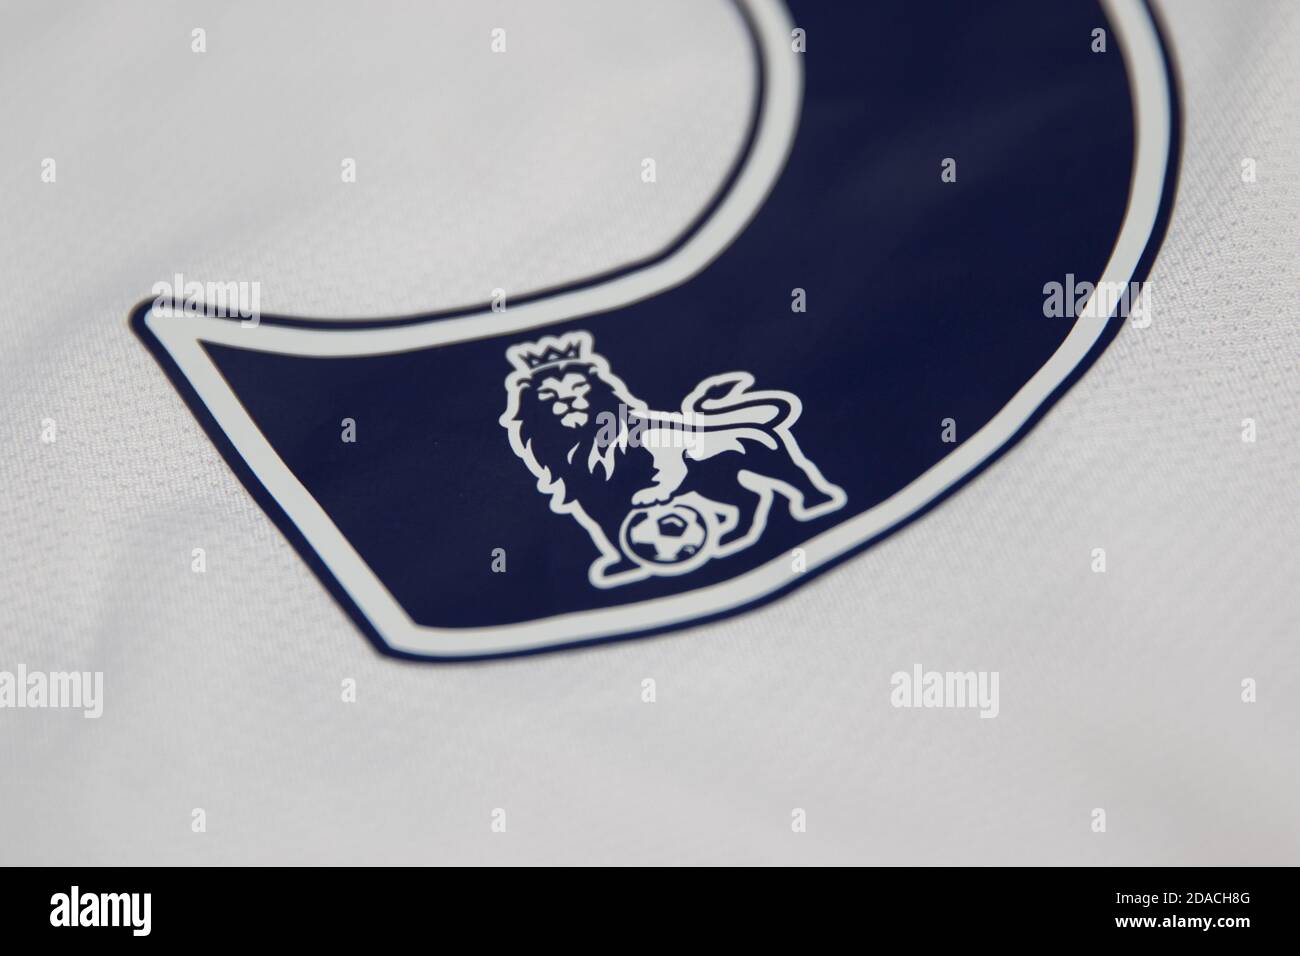 Leone Premier League con logo calcistico inset all'interno della a numero del retro della camicia Foto Stock